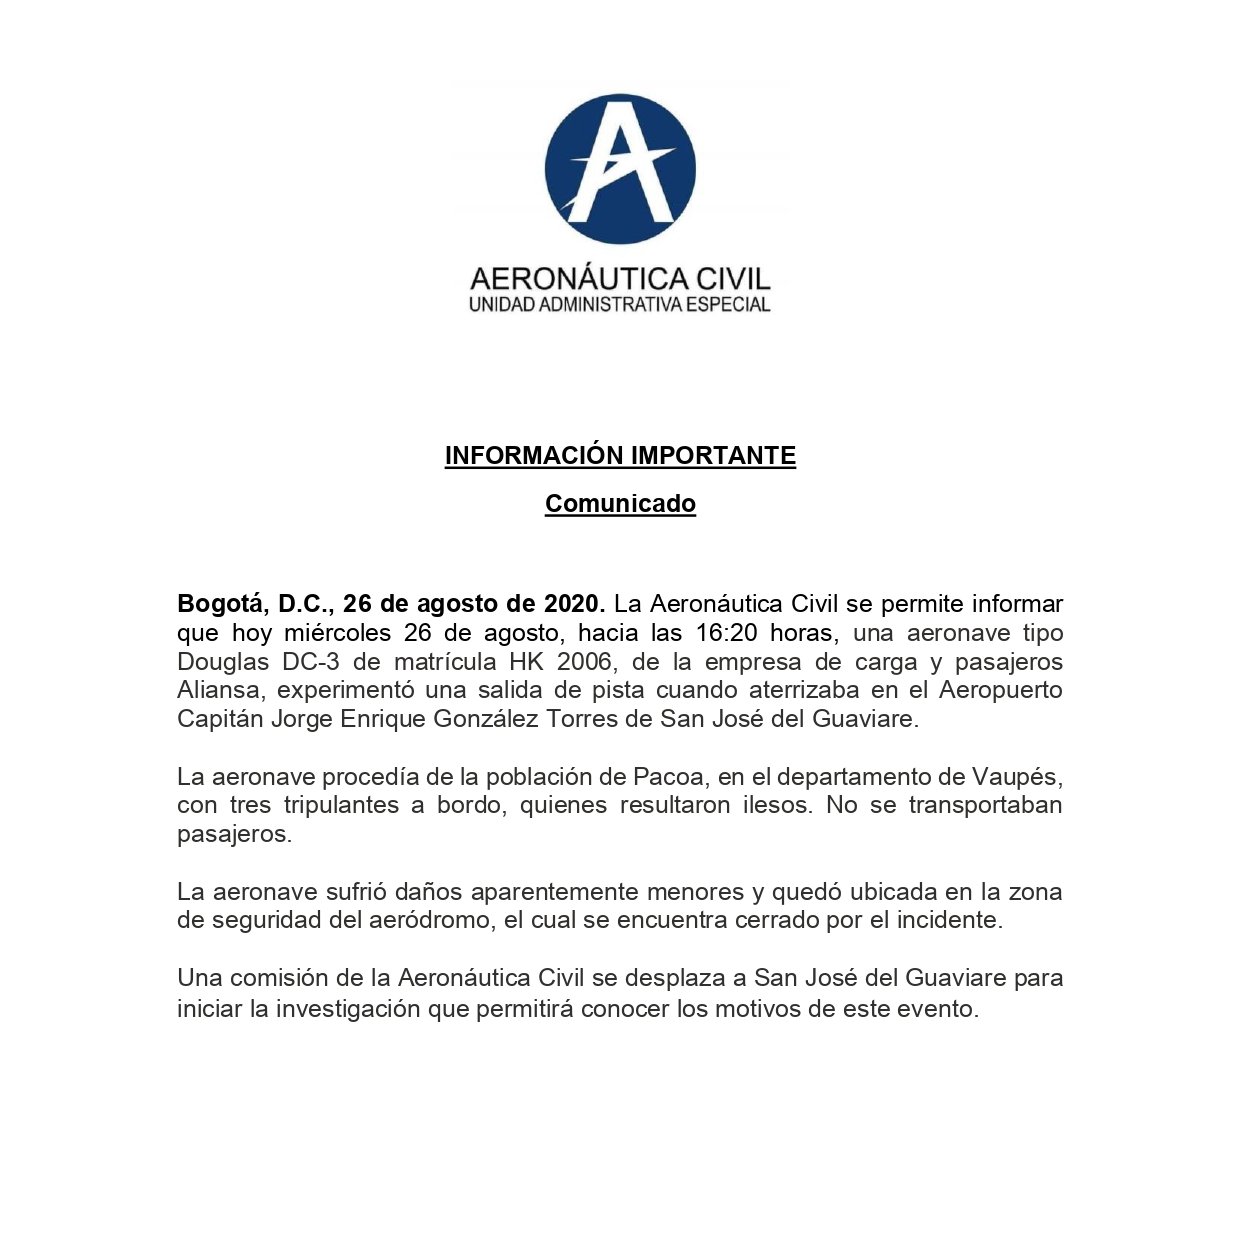 Comunicado de prensa de la Aeronáutica Civil sobre incidente aéreo en San José del Guaviare.